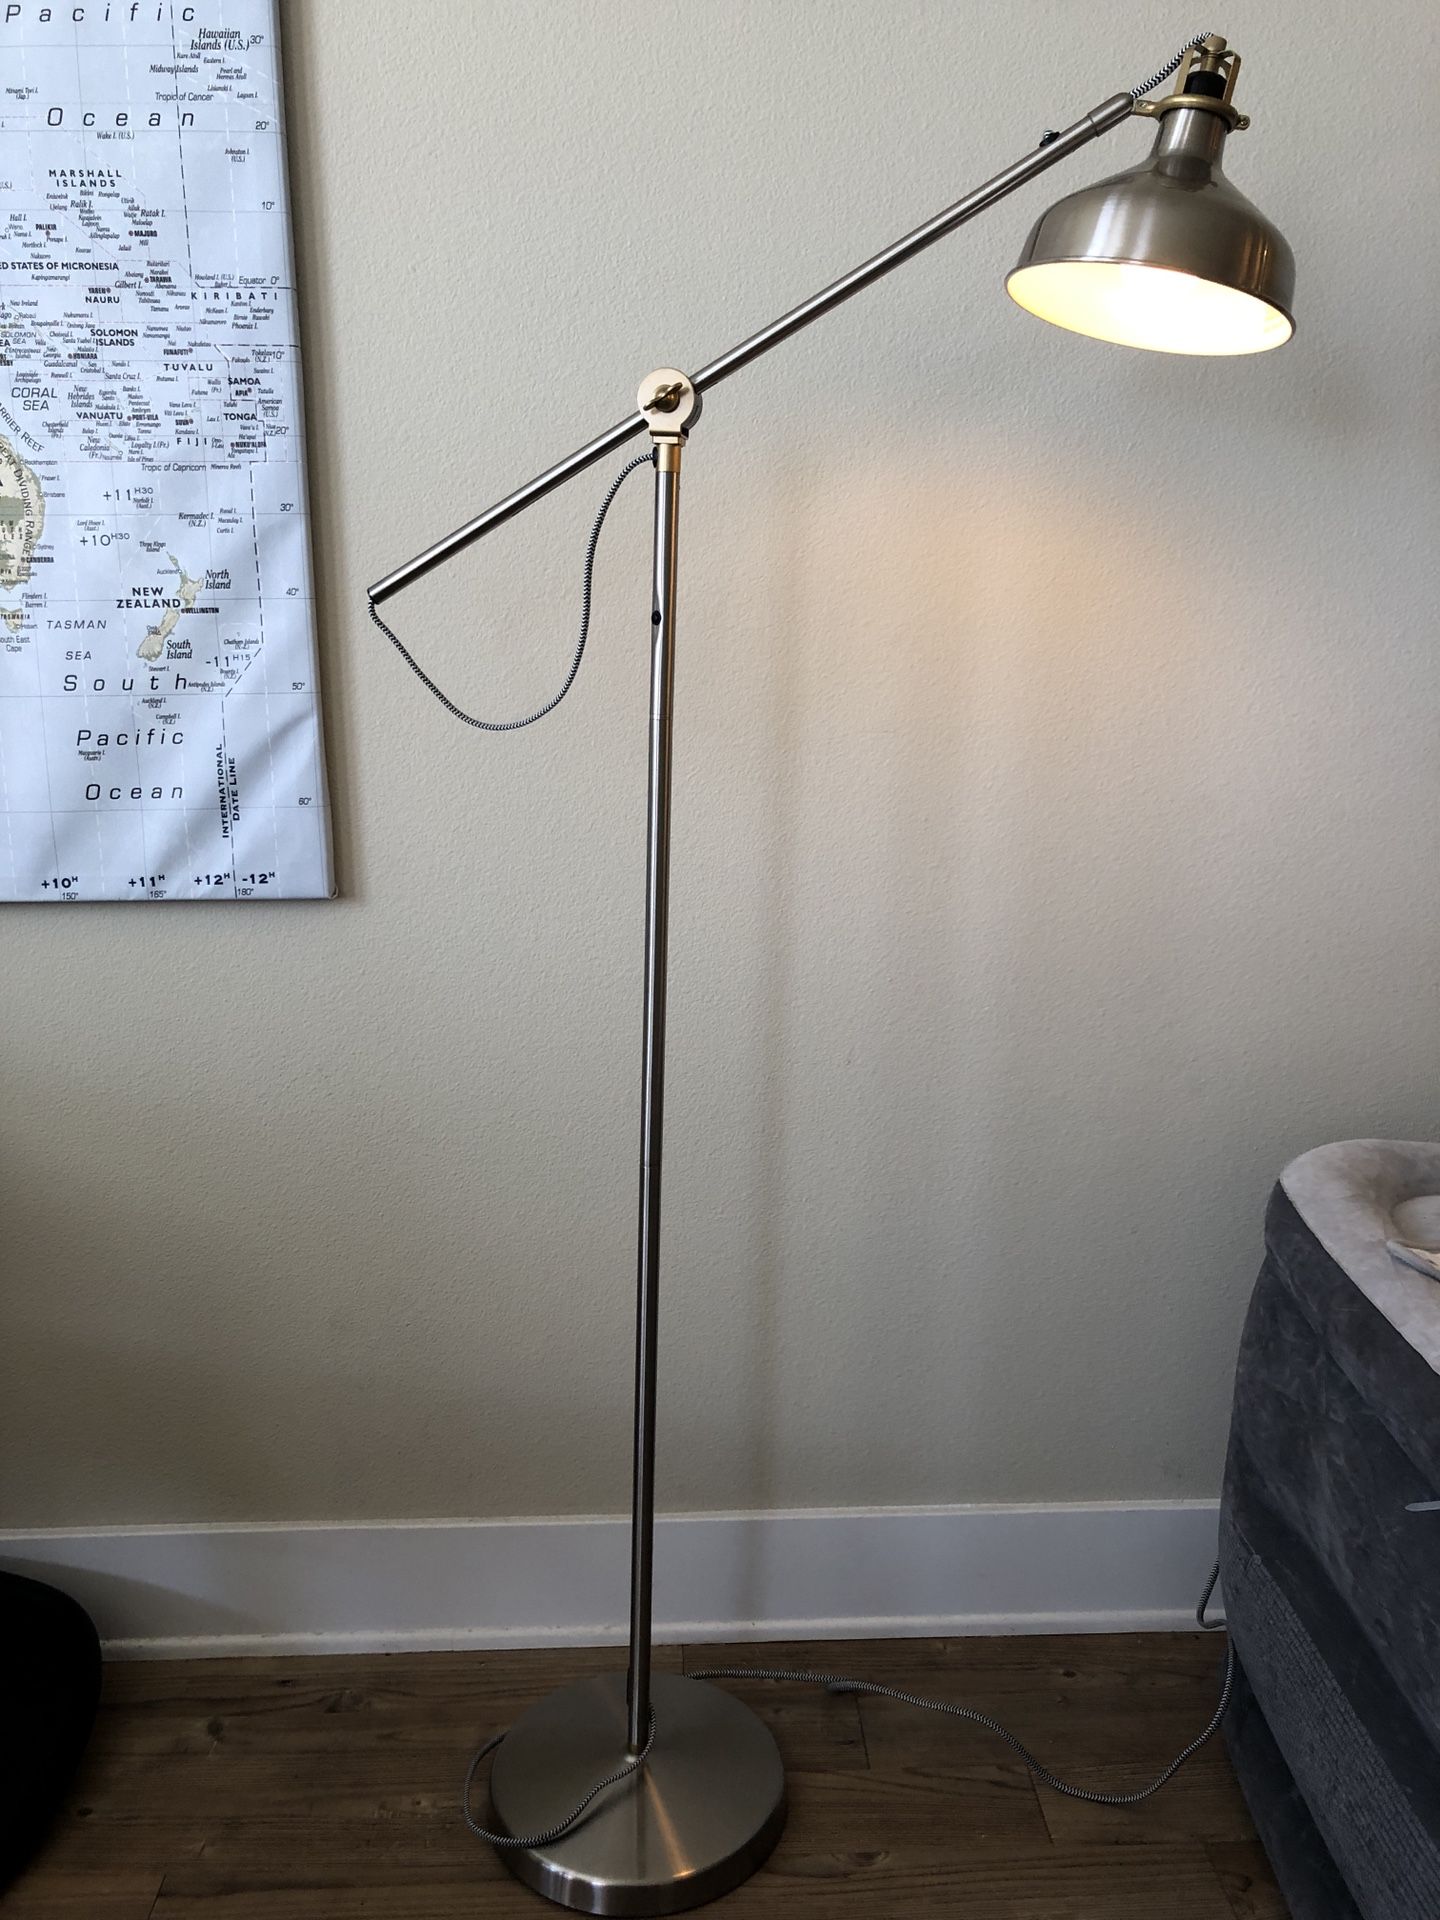 IKEA Ranarp floor lamp